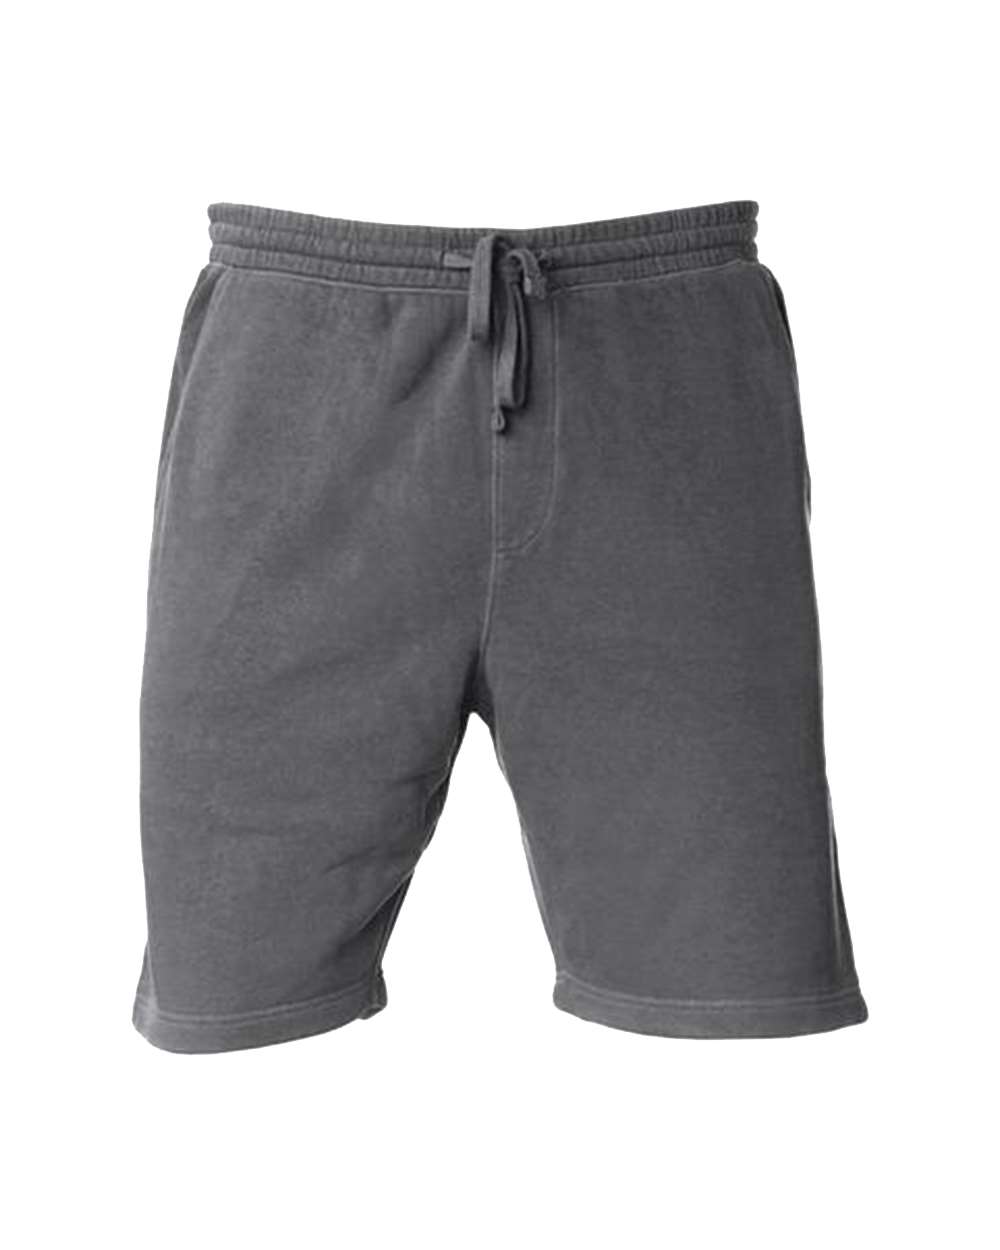 Comfort Fleece Shorts